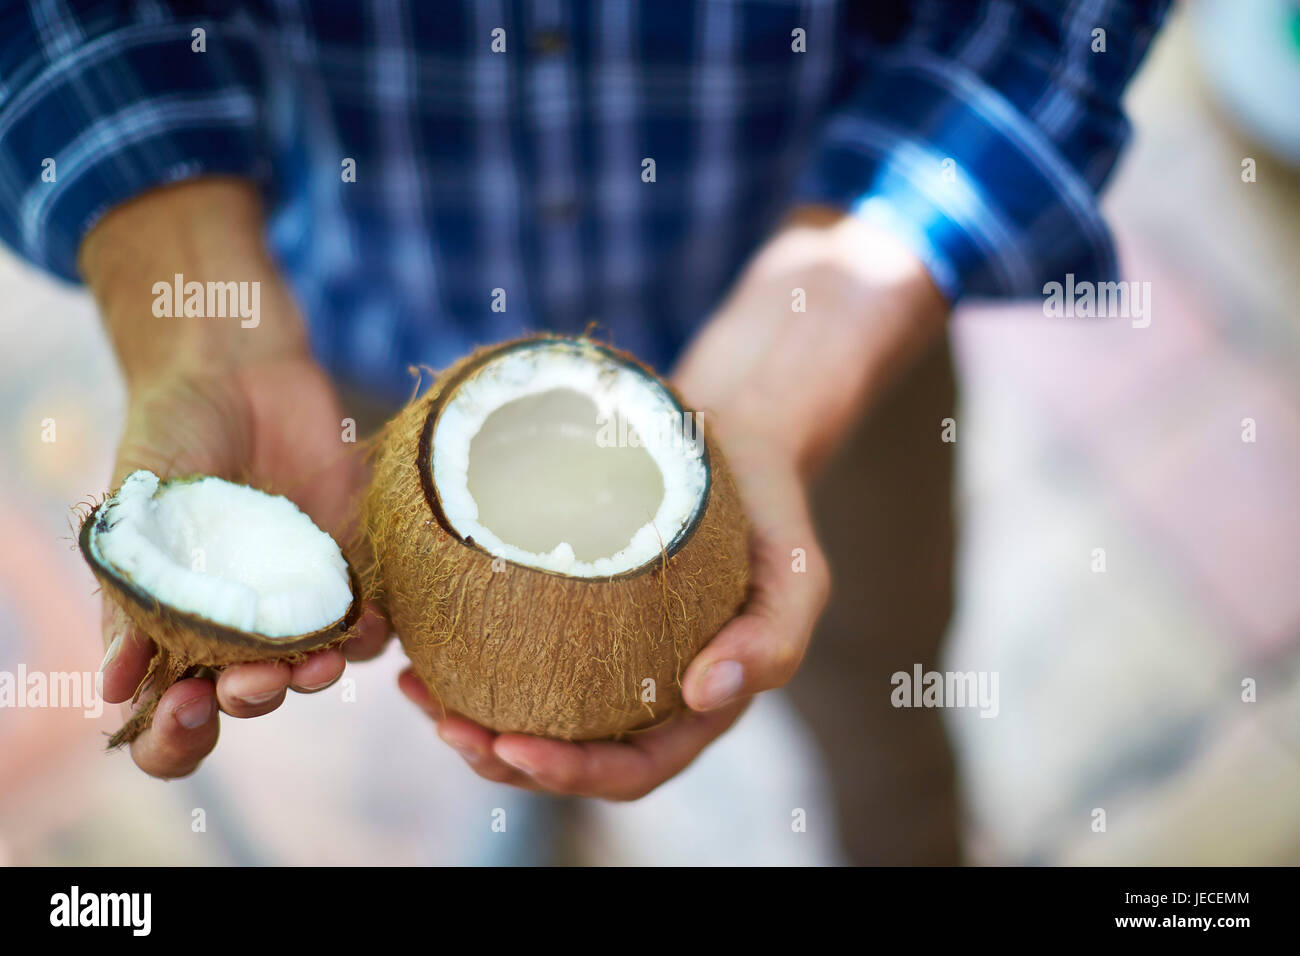 Persona aperta di cracking cocco fresco Foto Stock